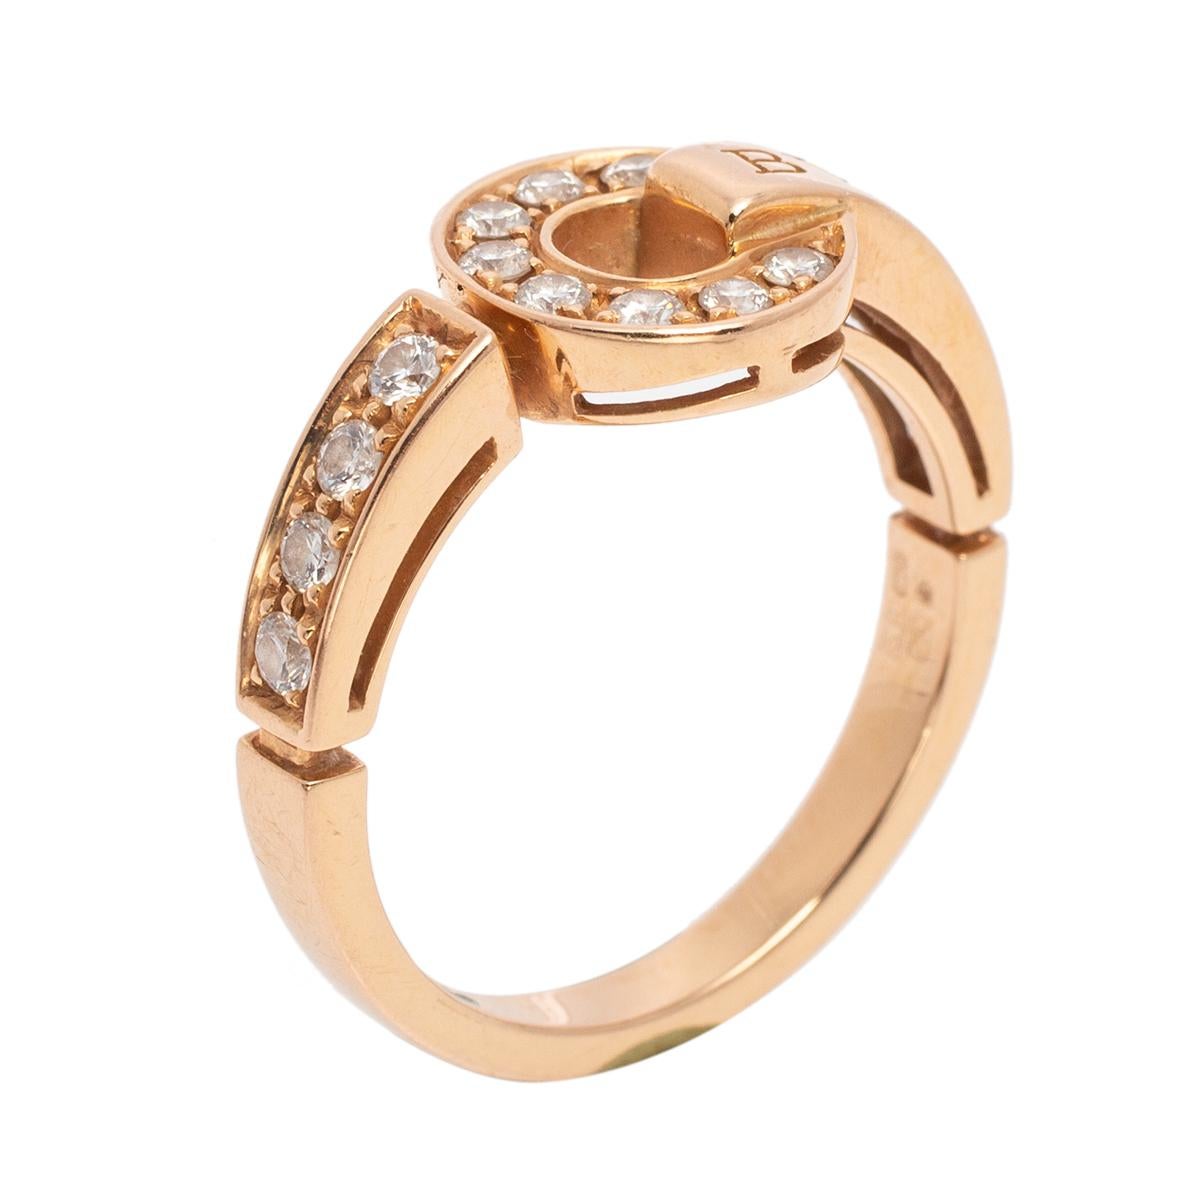 Bvlgari Bvlgari Pave Diamond 18K Rose Gold Ring Size 56 3